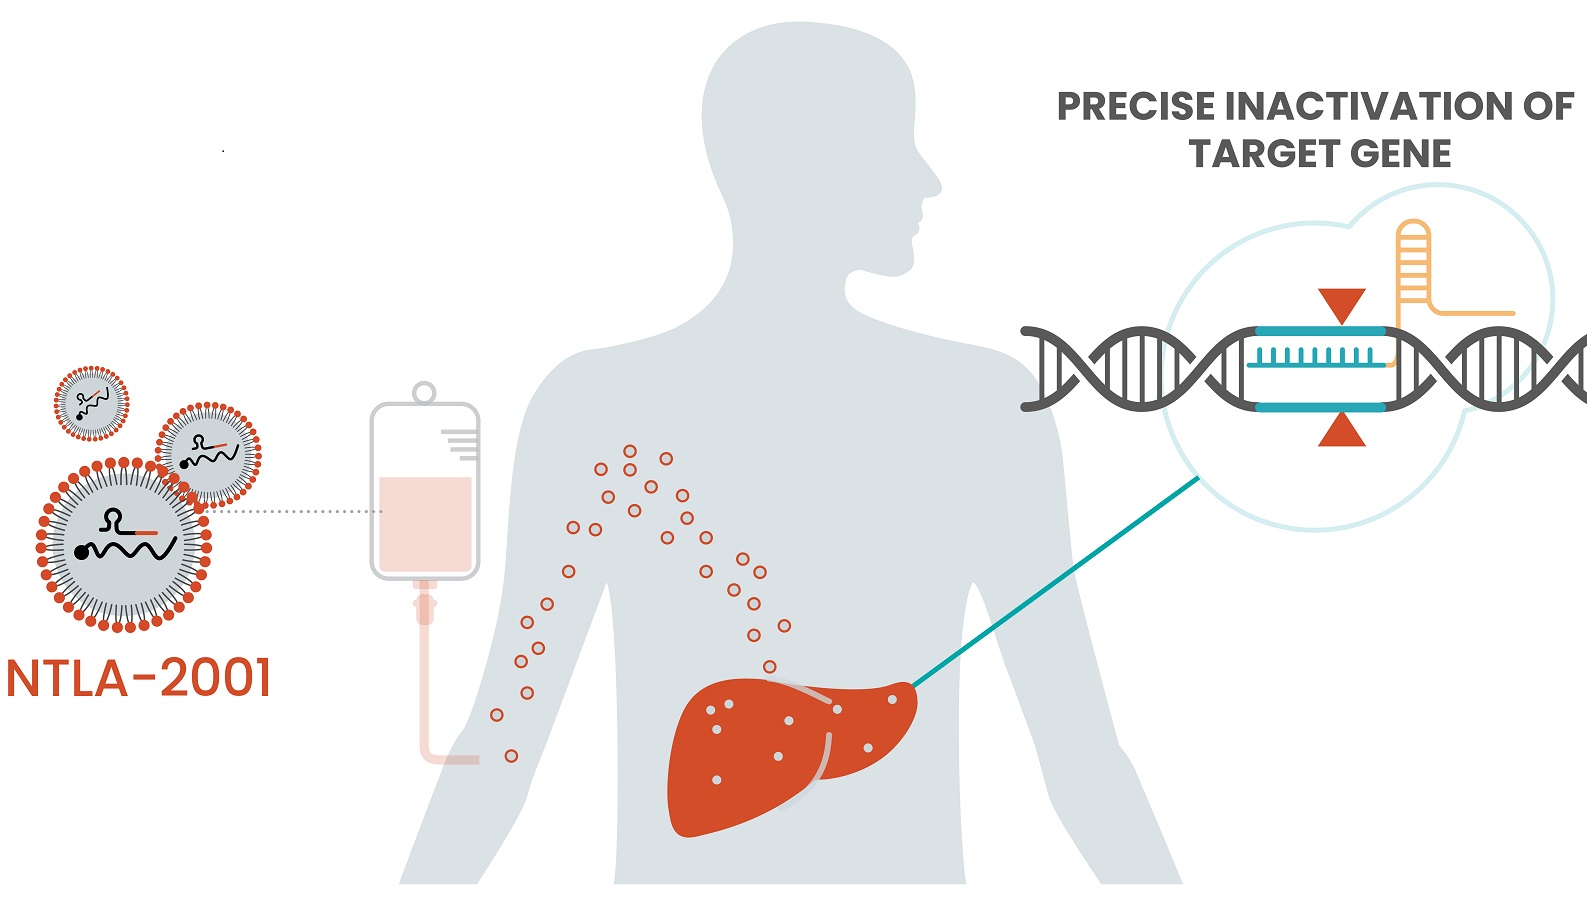 脂质纳米粒子通过静脉注射并进入肝脏的示意图